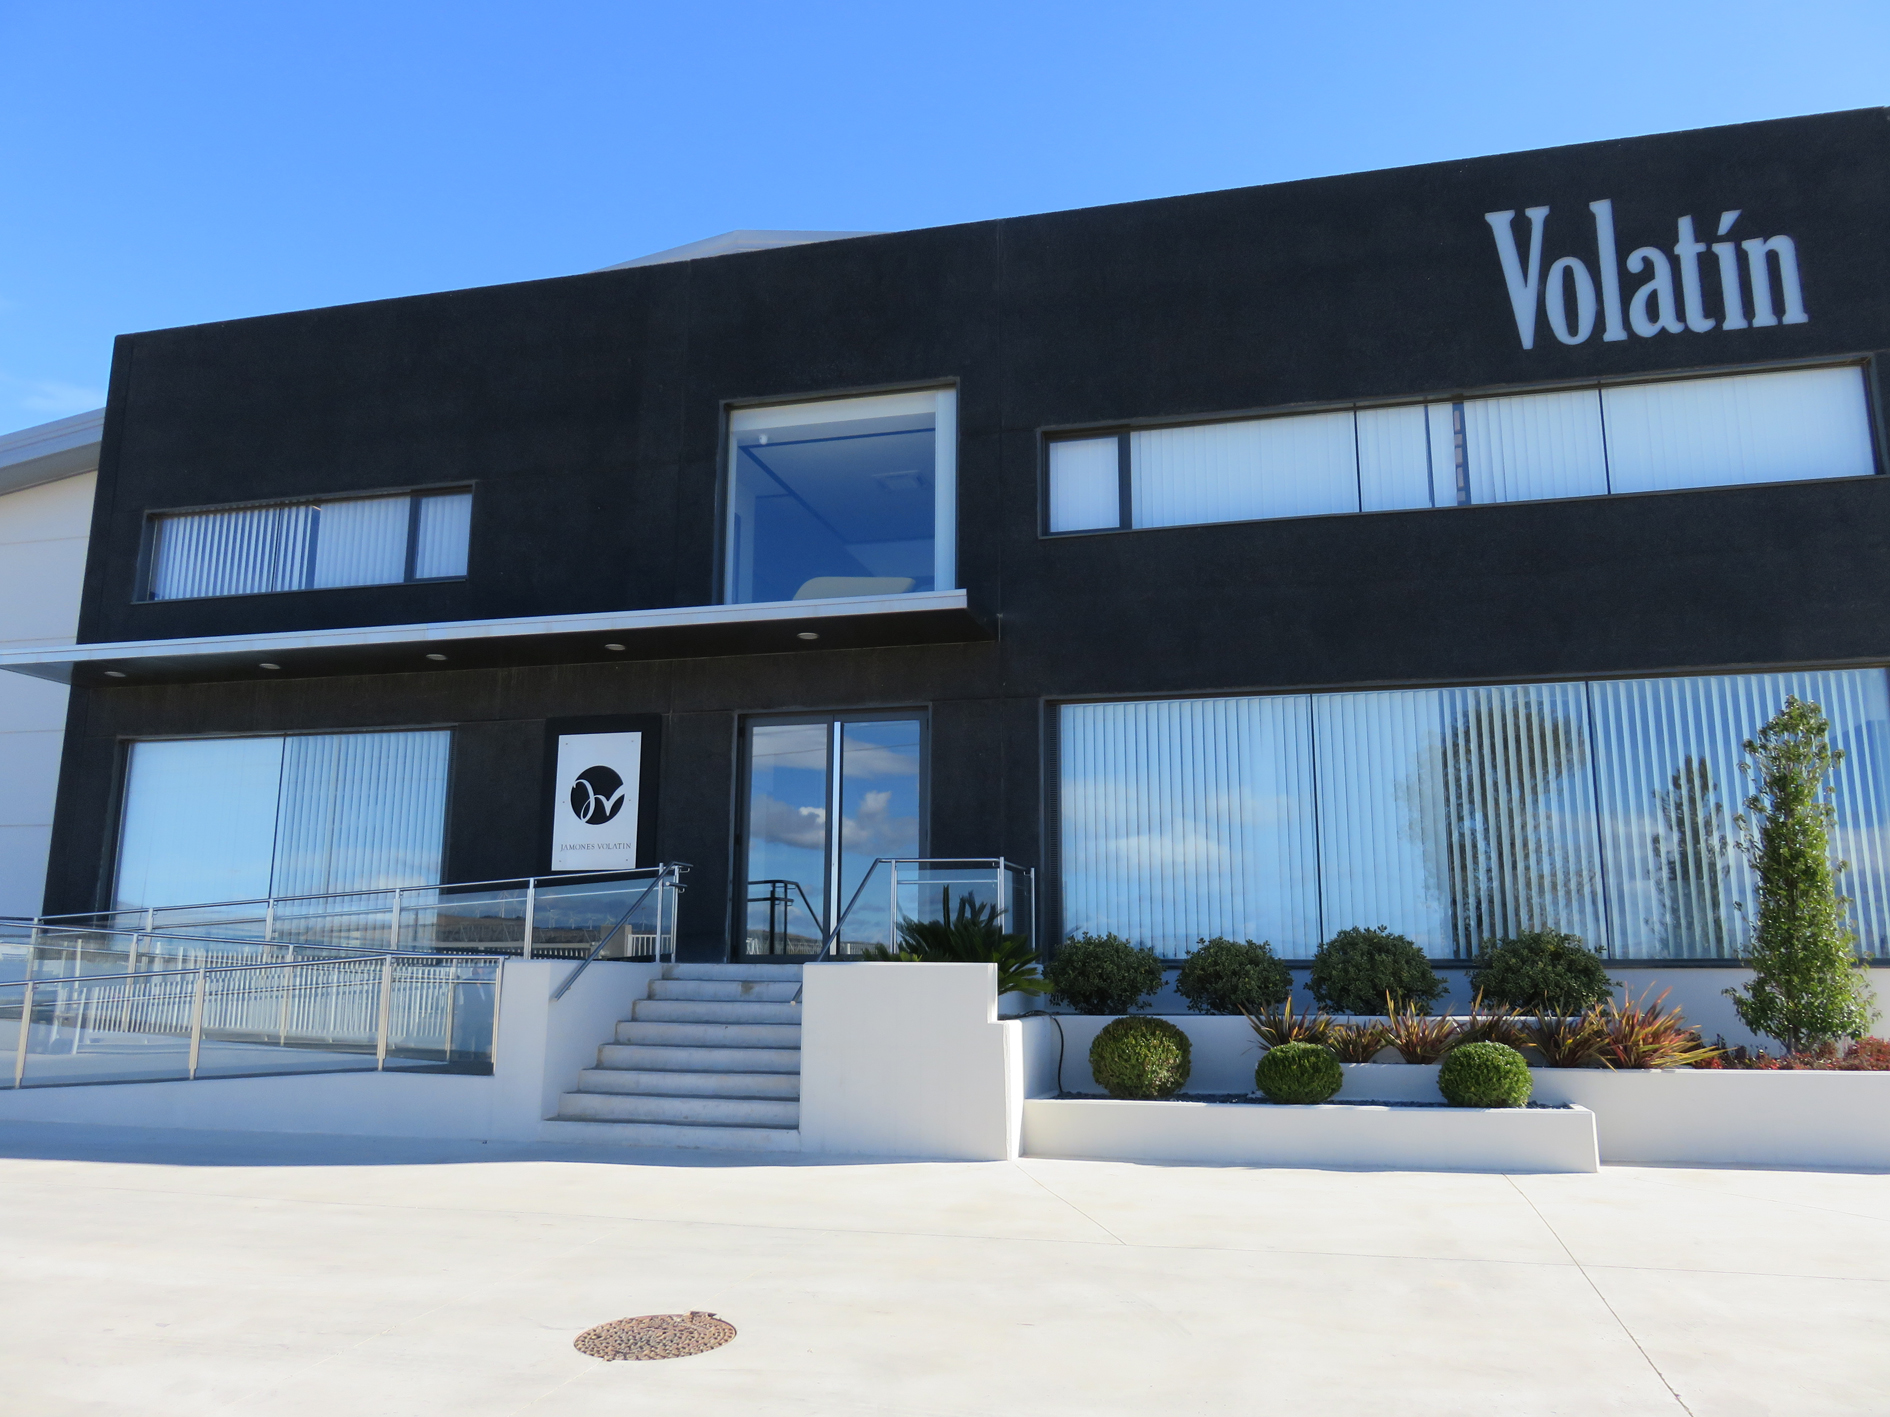 Jamones Volatn est ubicada en la Ciudad Agroalimentaria de Tudela desde mediados de 2015